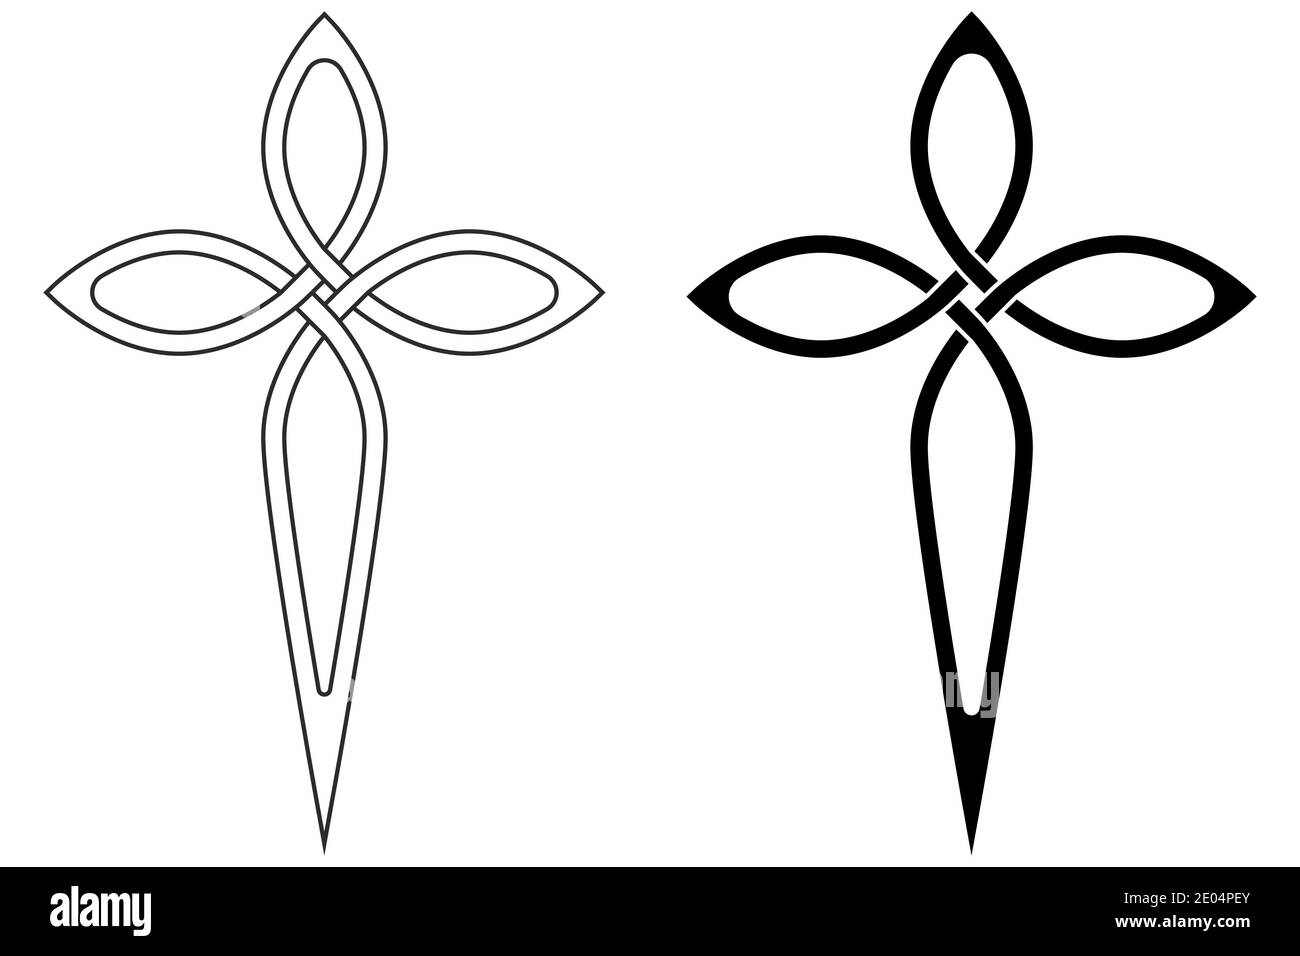 symbol faith Christian Church cross graceful contours, vector cross symbol sign of faith in God Stock Vector